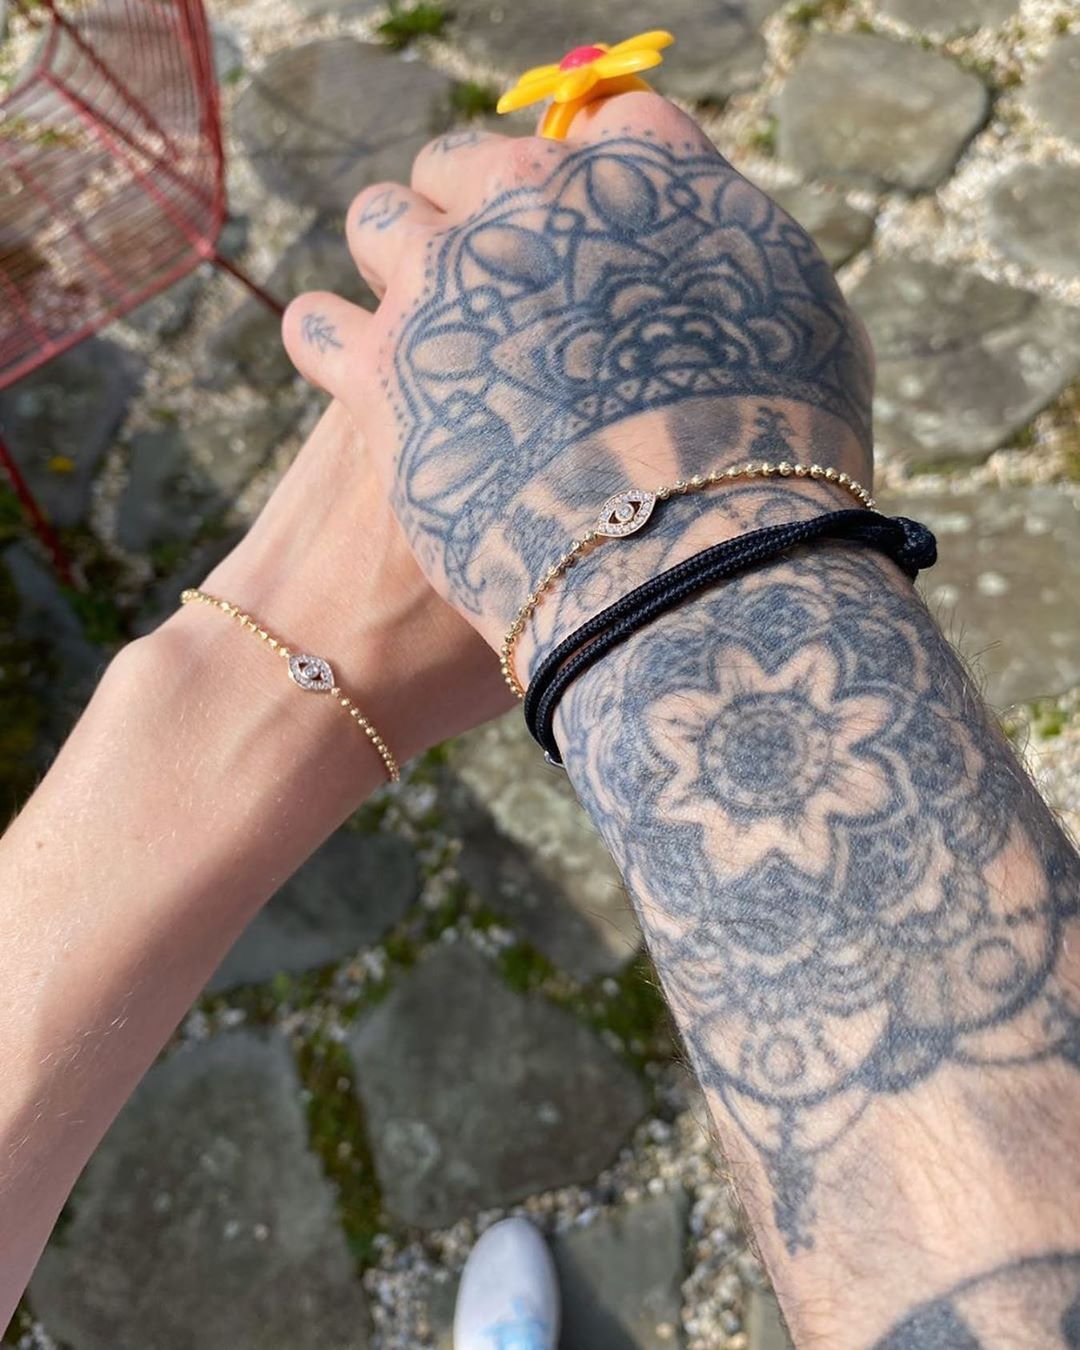 Зейн Малик сделал новое тату, которым намекнул на помолвку с Джиджи Хадид - фото 477397